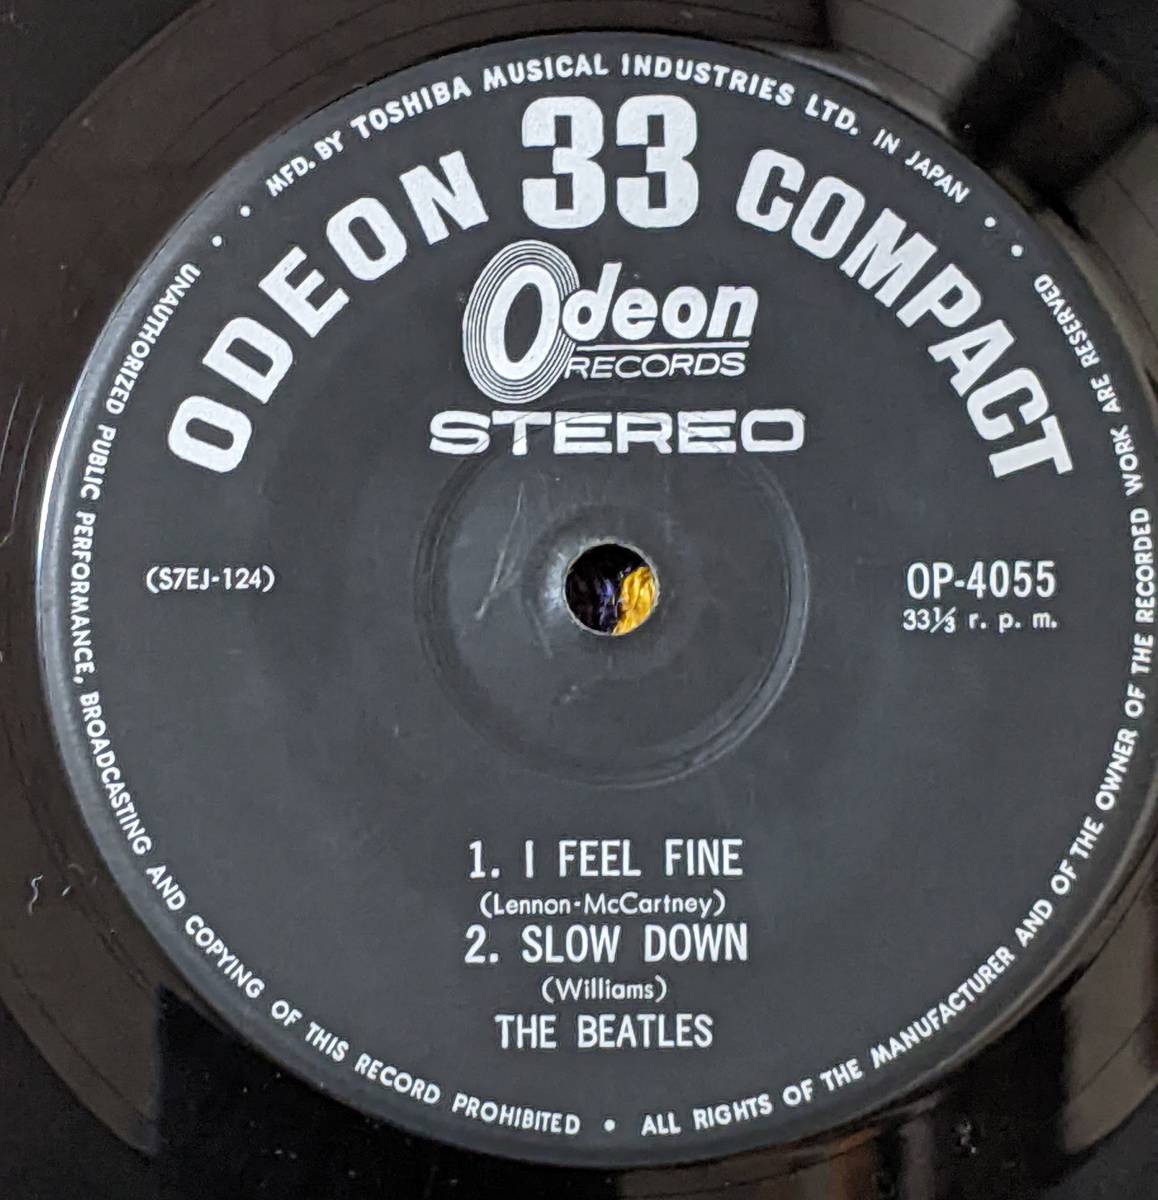 60's ビートルズ (\500 Odeon盤 4曲入EP)/ のっぽのサリー マッチボックス アイ・フィール・ファイン スロー・ダウン OP-4055 1964年_画像5